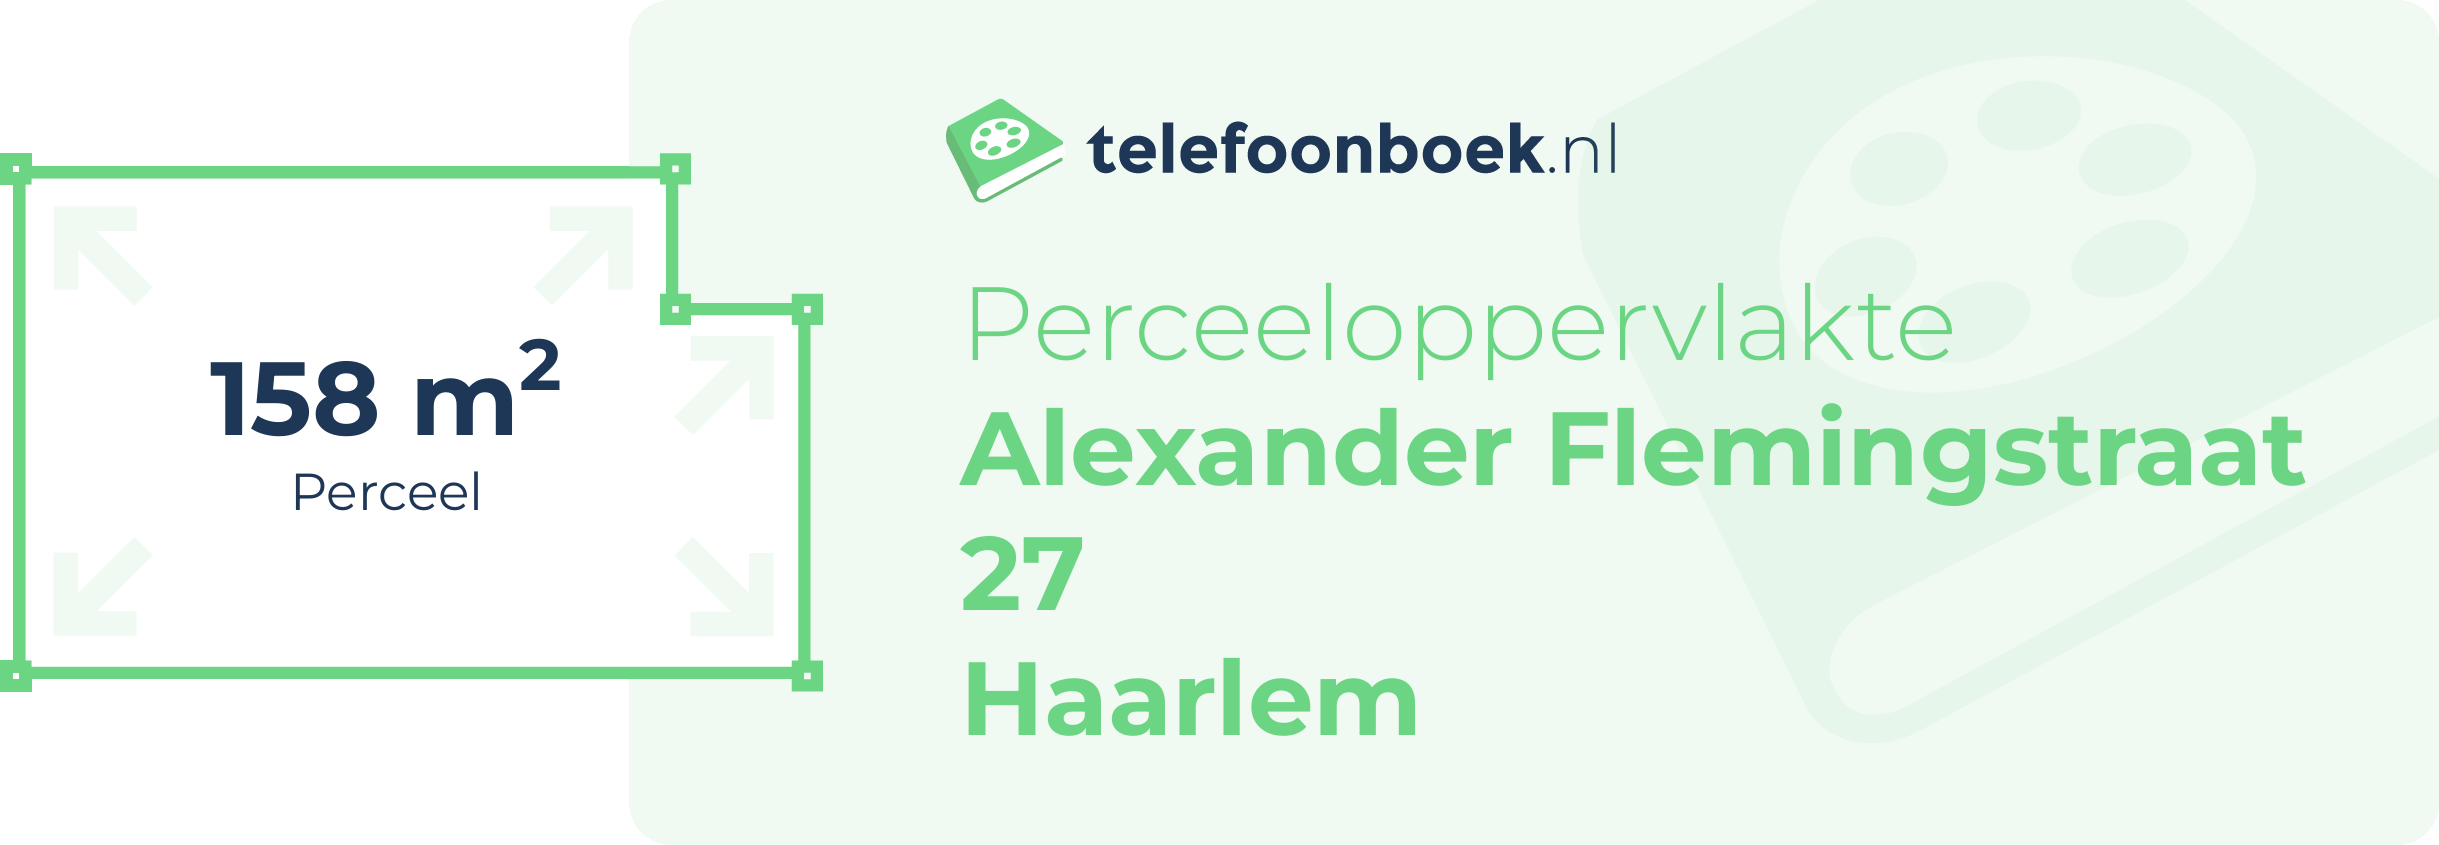 Perceeloppervlakte Alexander Flemingstraat 27 Haarlem